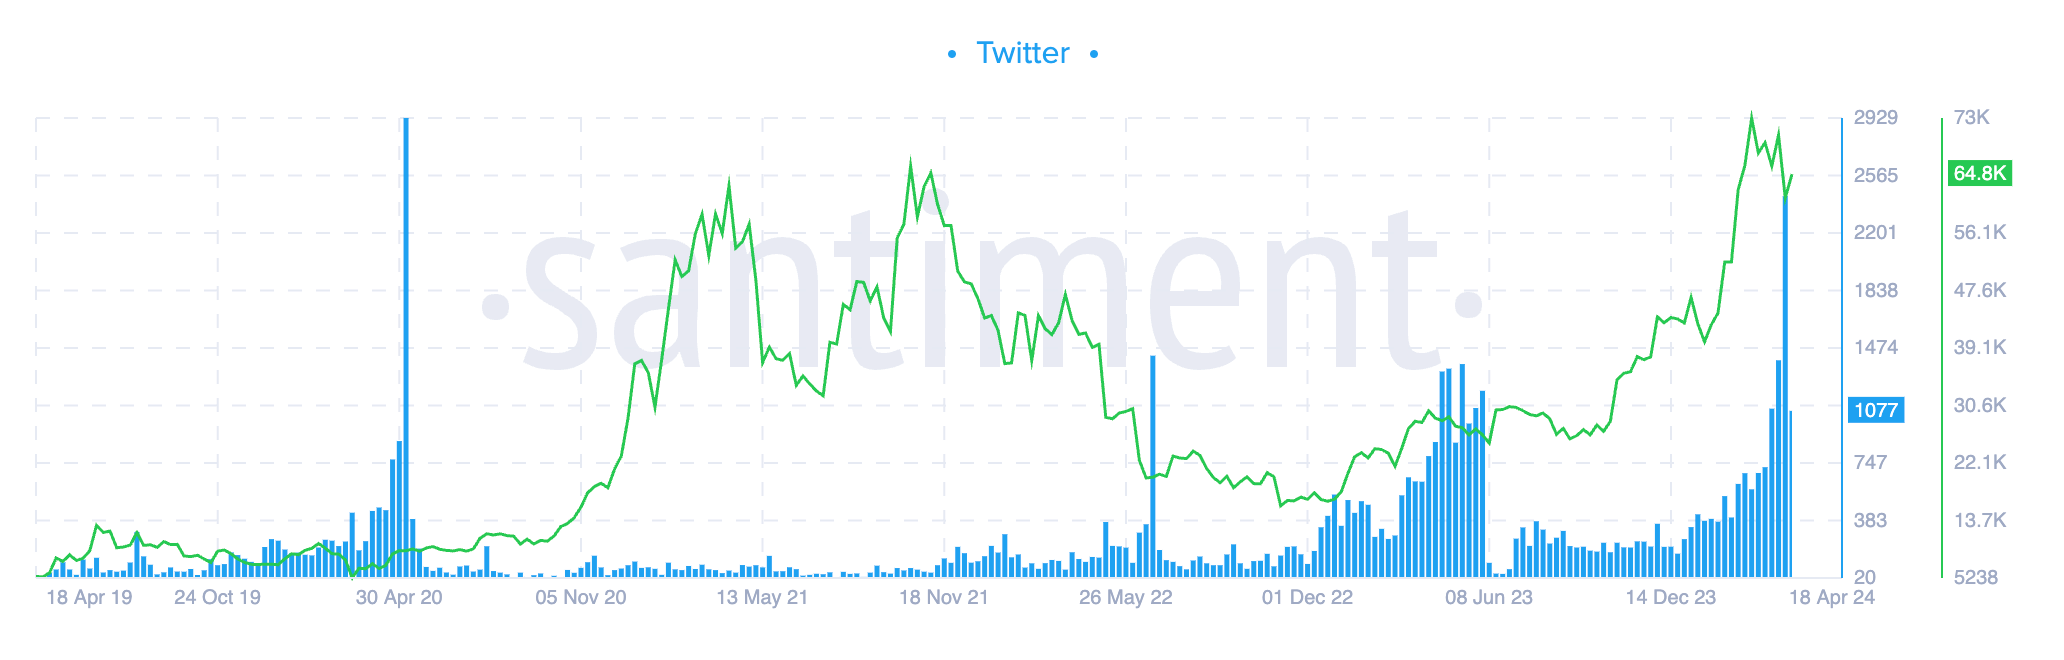 Bitcoin reduzindo pela metade o interesse no Twitter (Santiment)